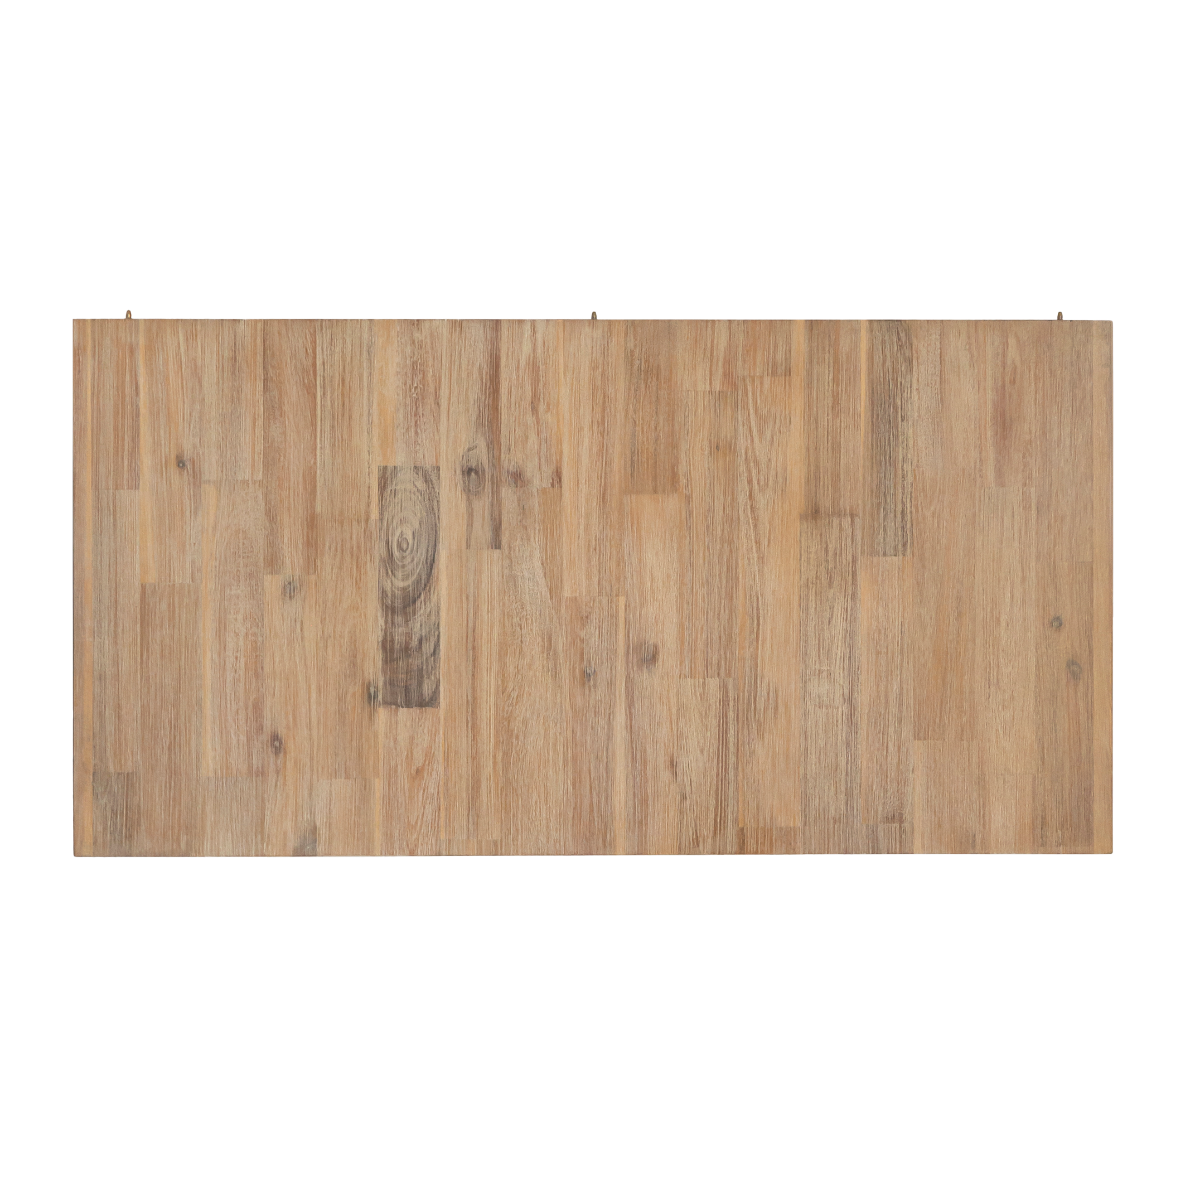 Table à manger rectangle en bois avec allonges en acacia Marin